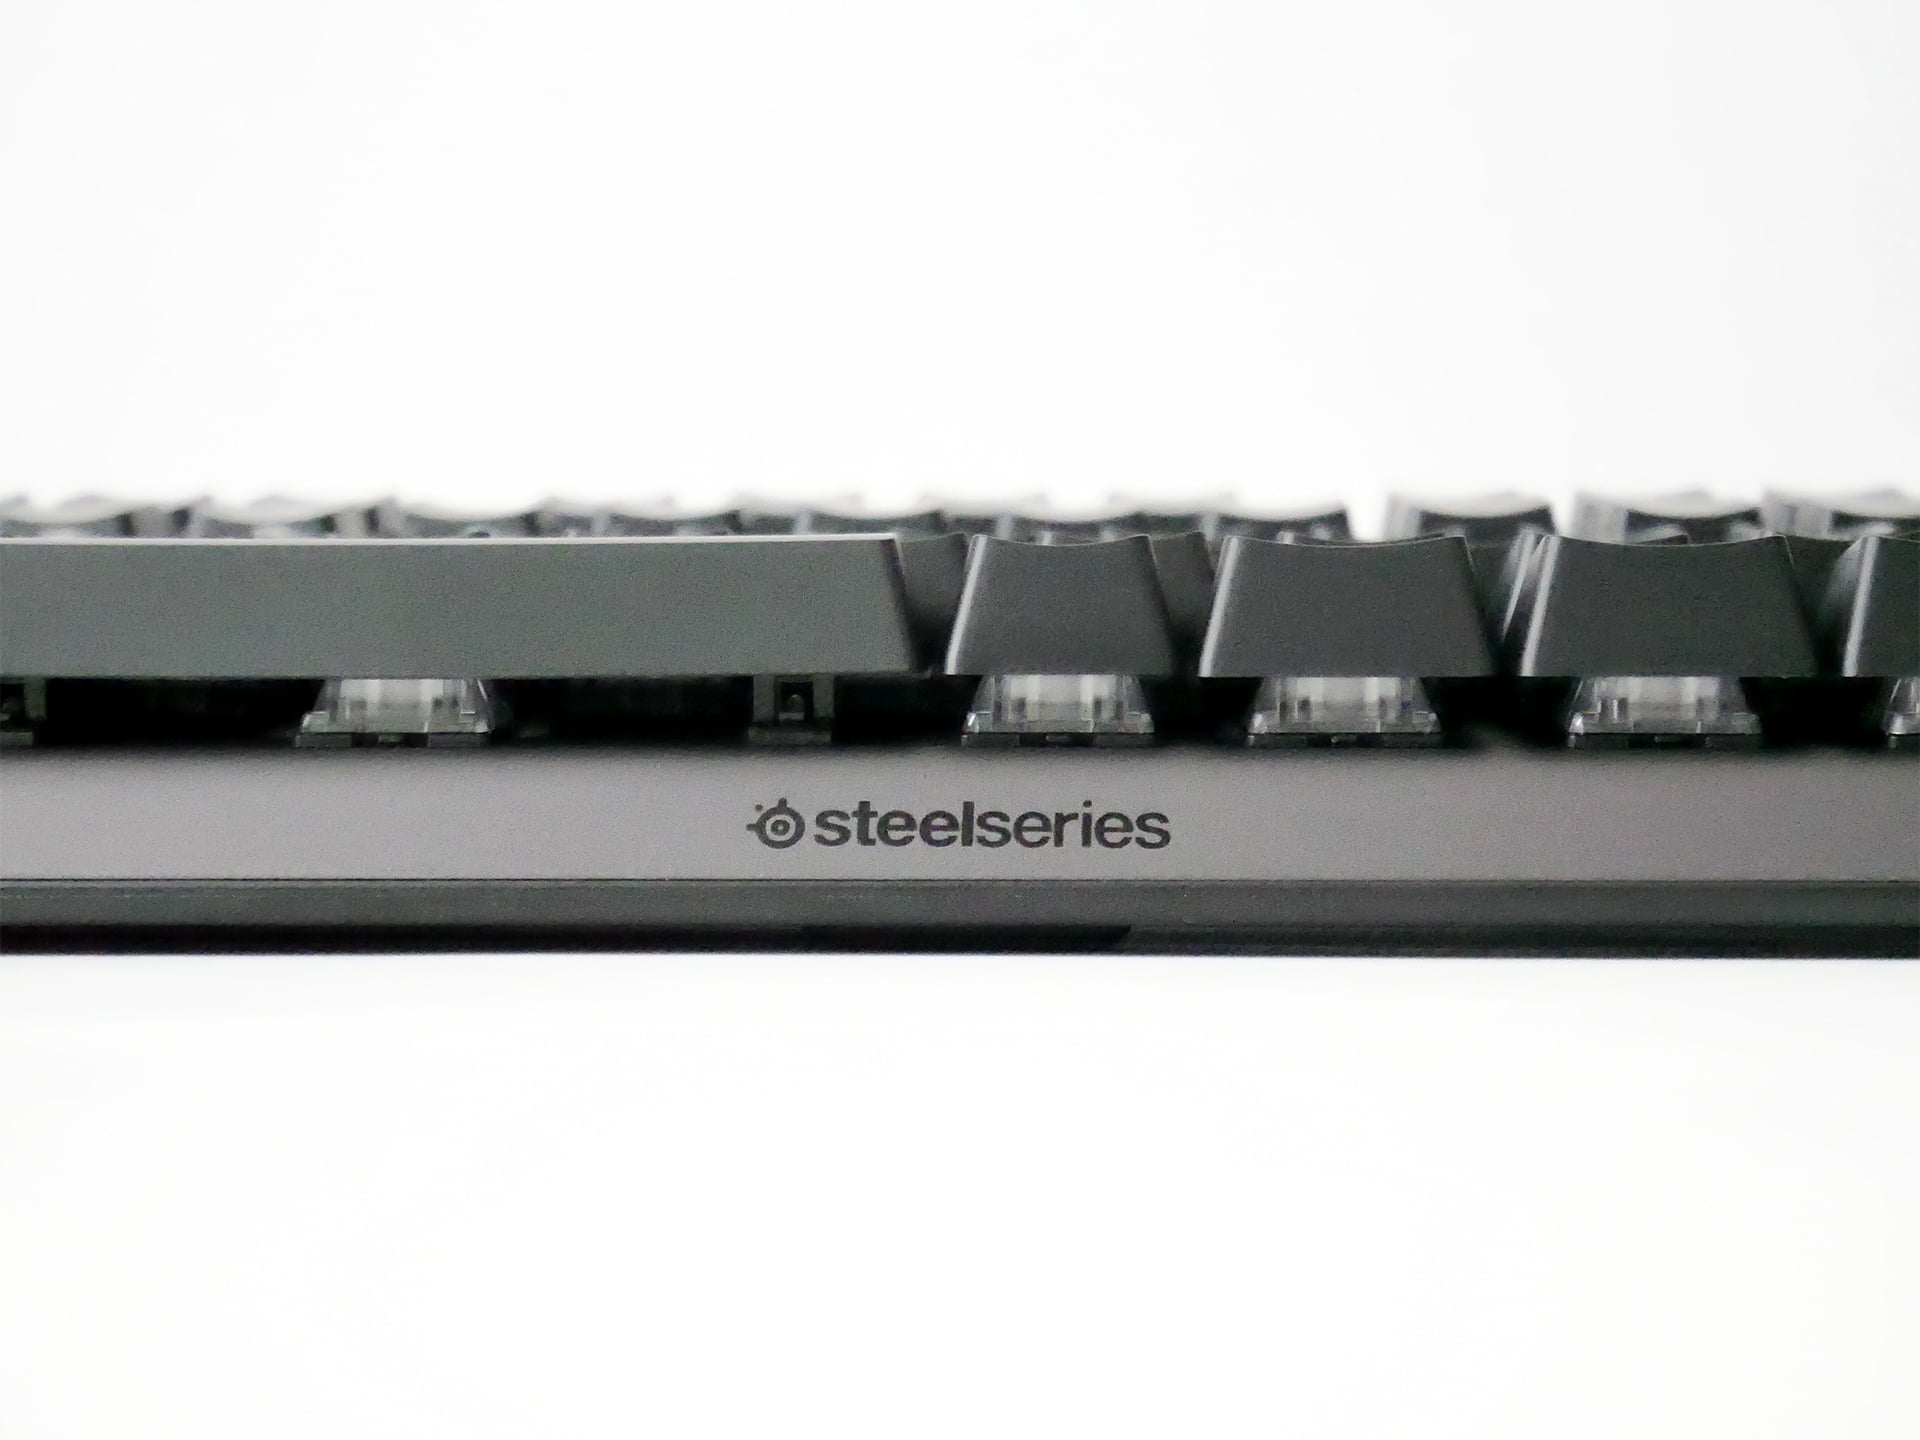 ゲームをせずとも軽い押し心地で早打ちしやすいキーボード SteelSeries